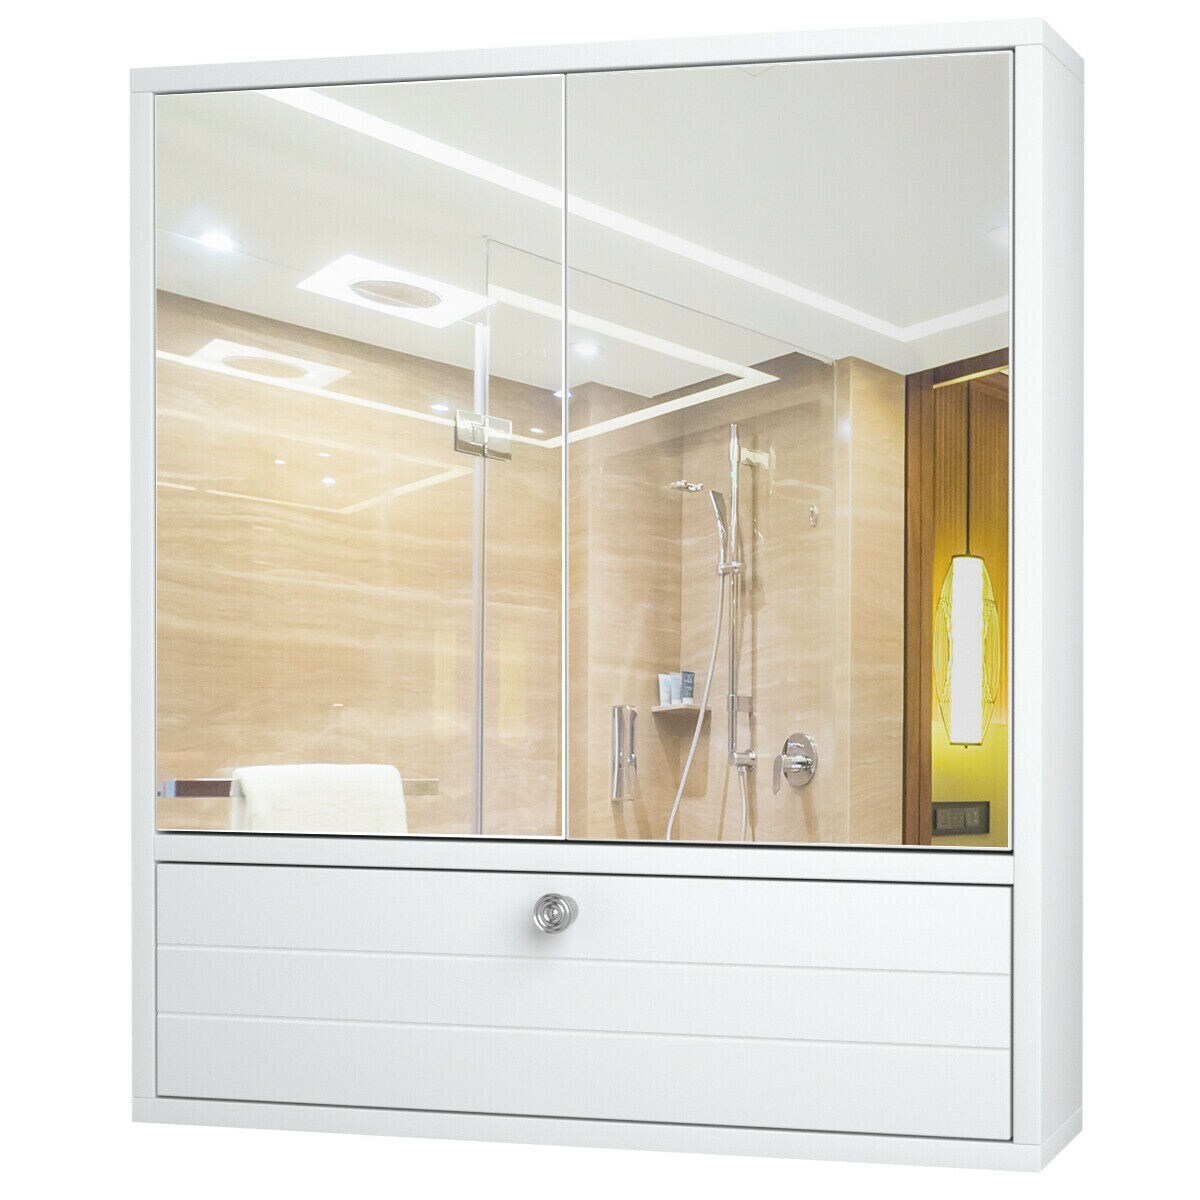 Bathroom Wall Mount Storage Cabinet Single Door with Height Adjustable Shelf  - Costway